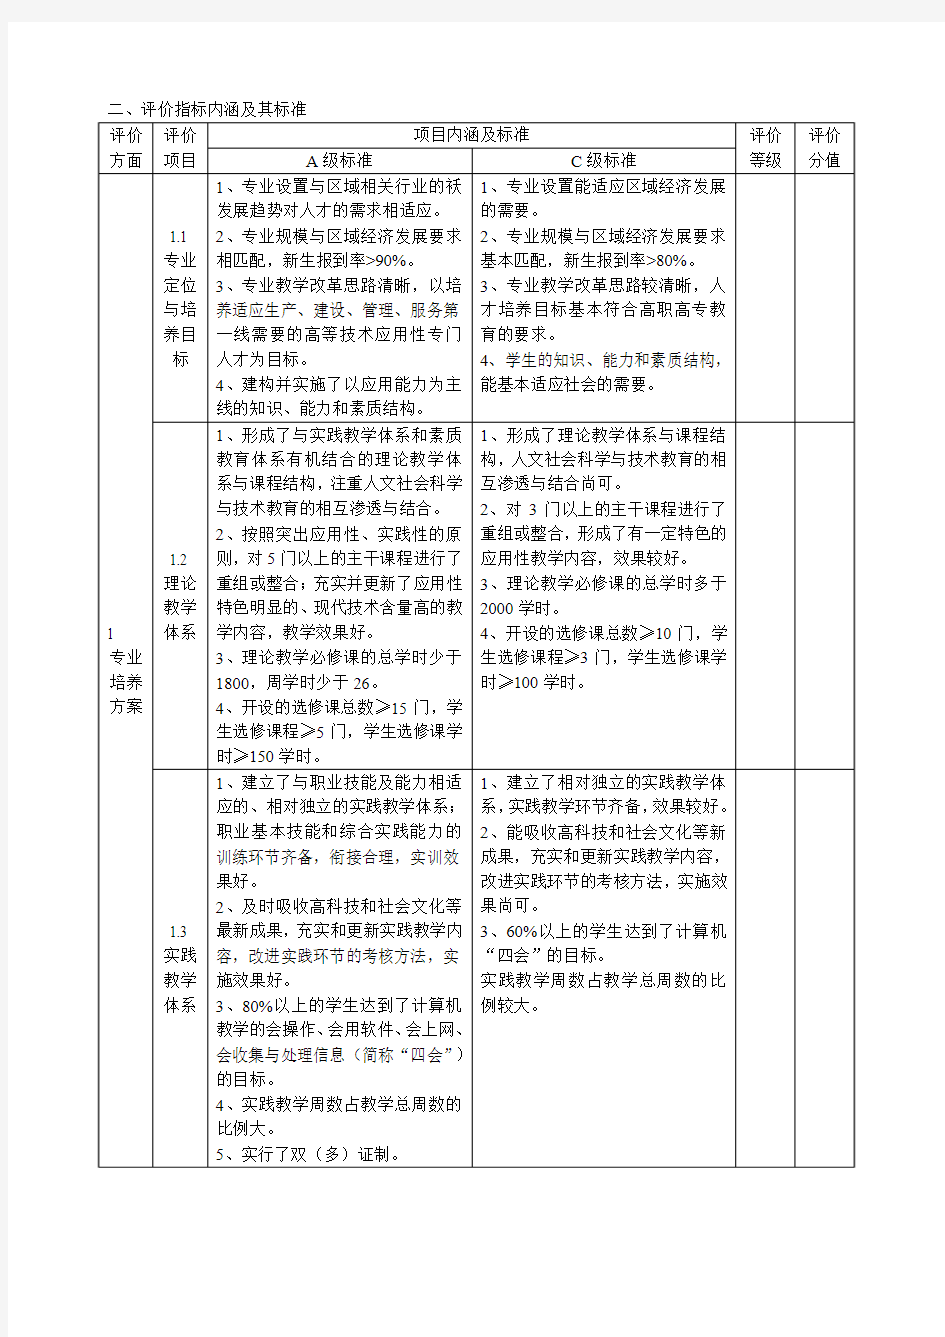 浙江省高职高专重点建设专业评价指标体系